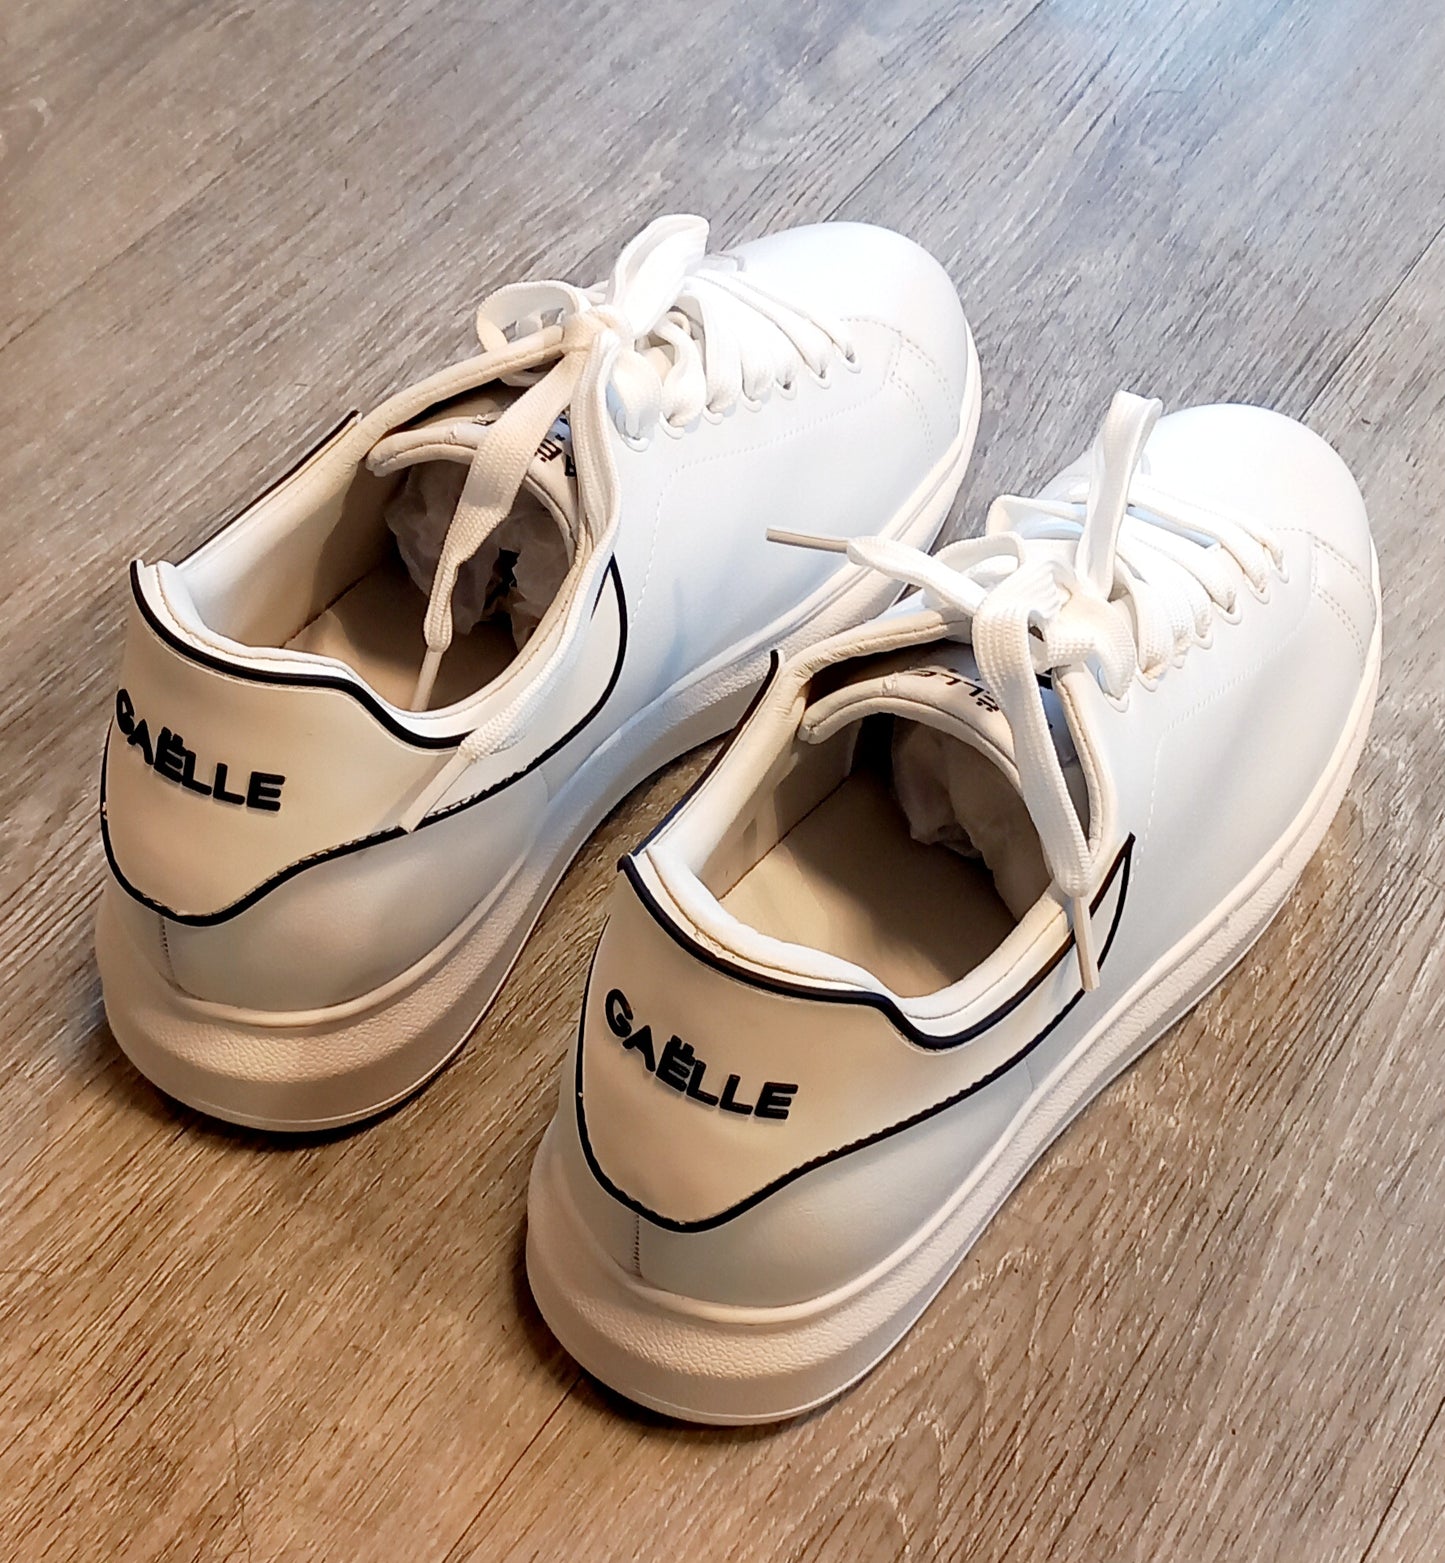 Gaelle Paris-Sneakers